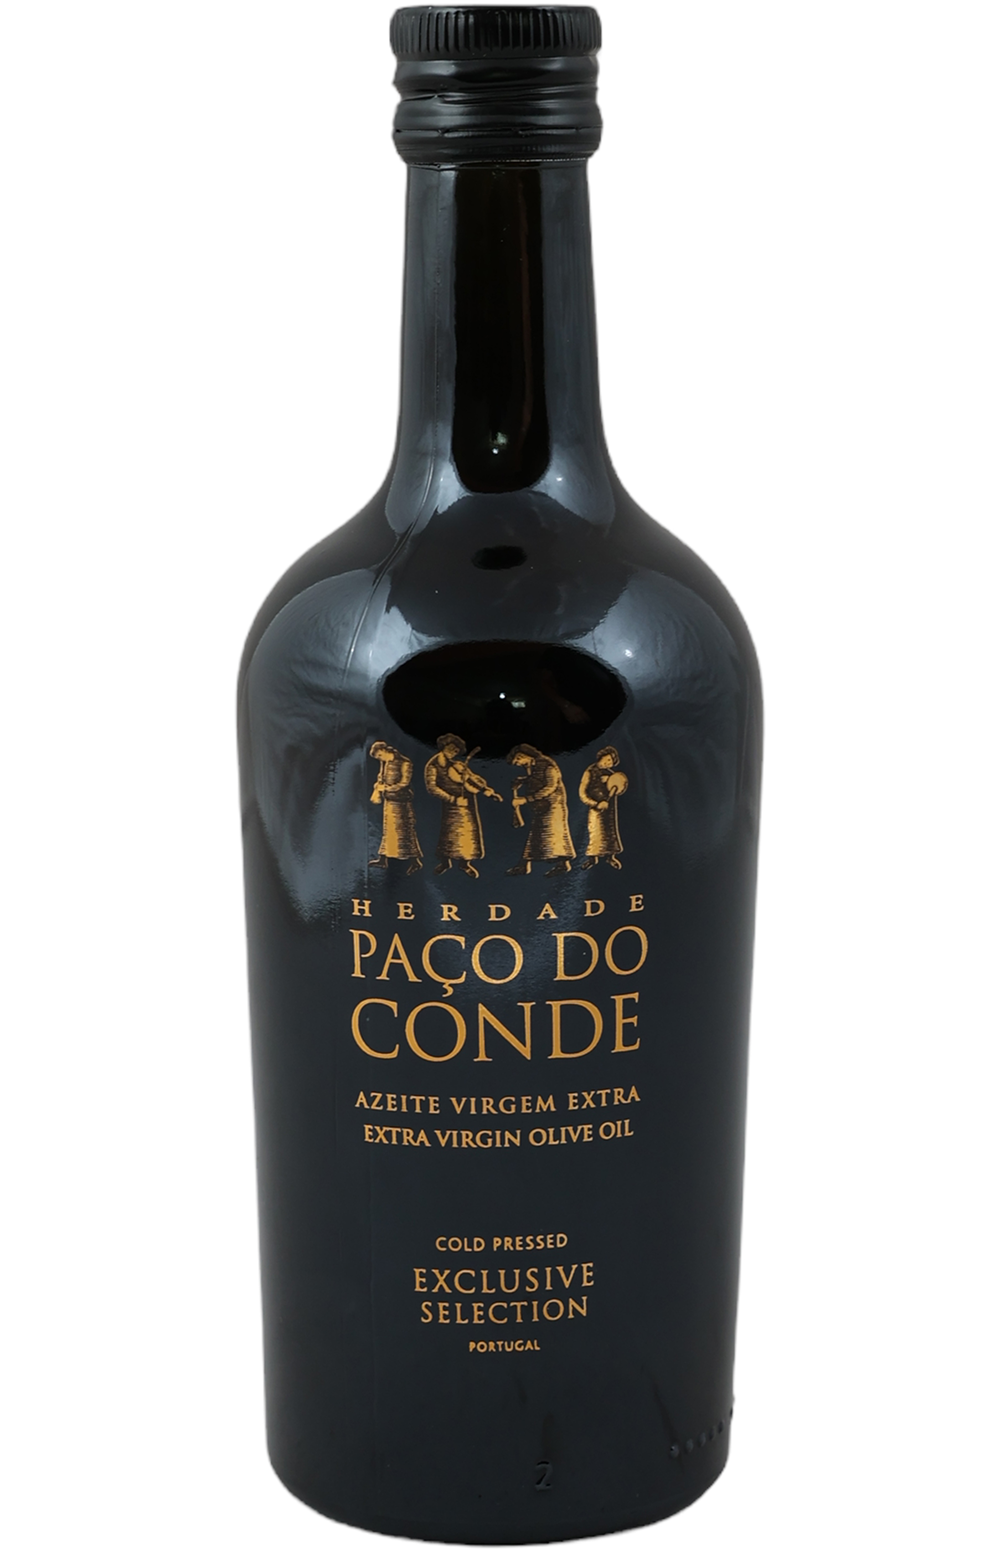 Herdade Paco do Conde Exclusive Selection